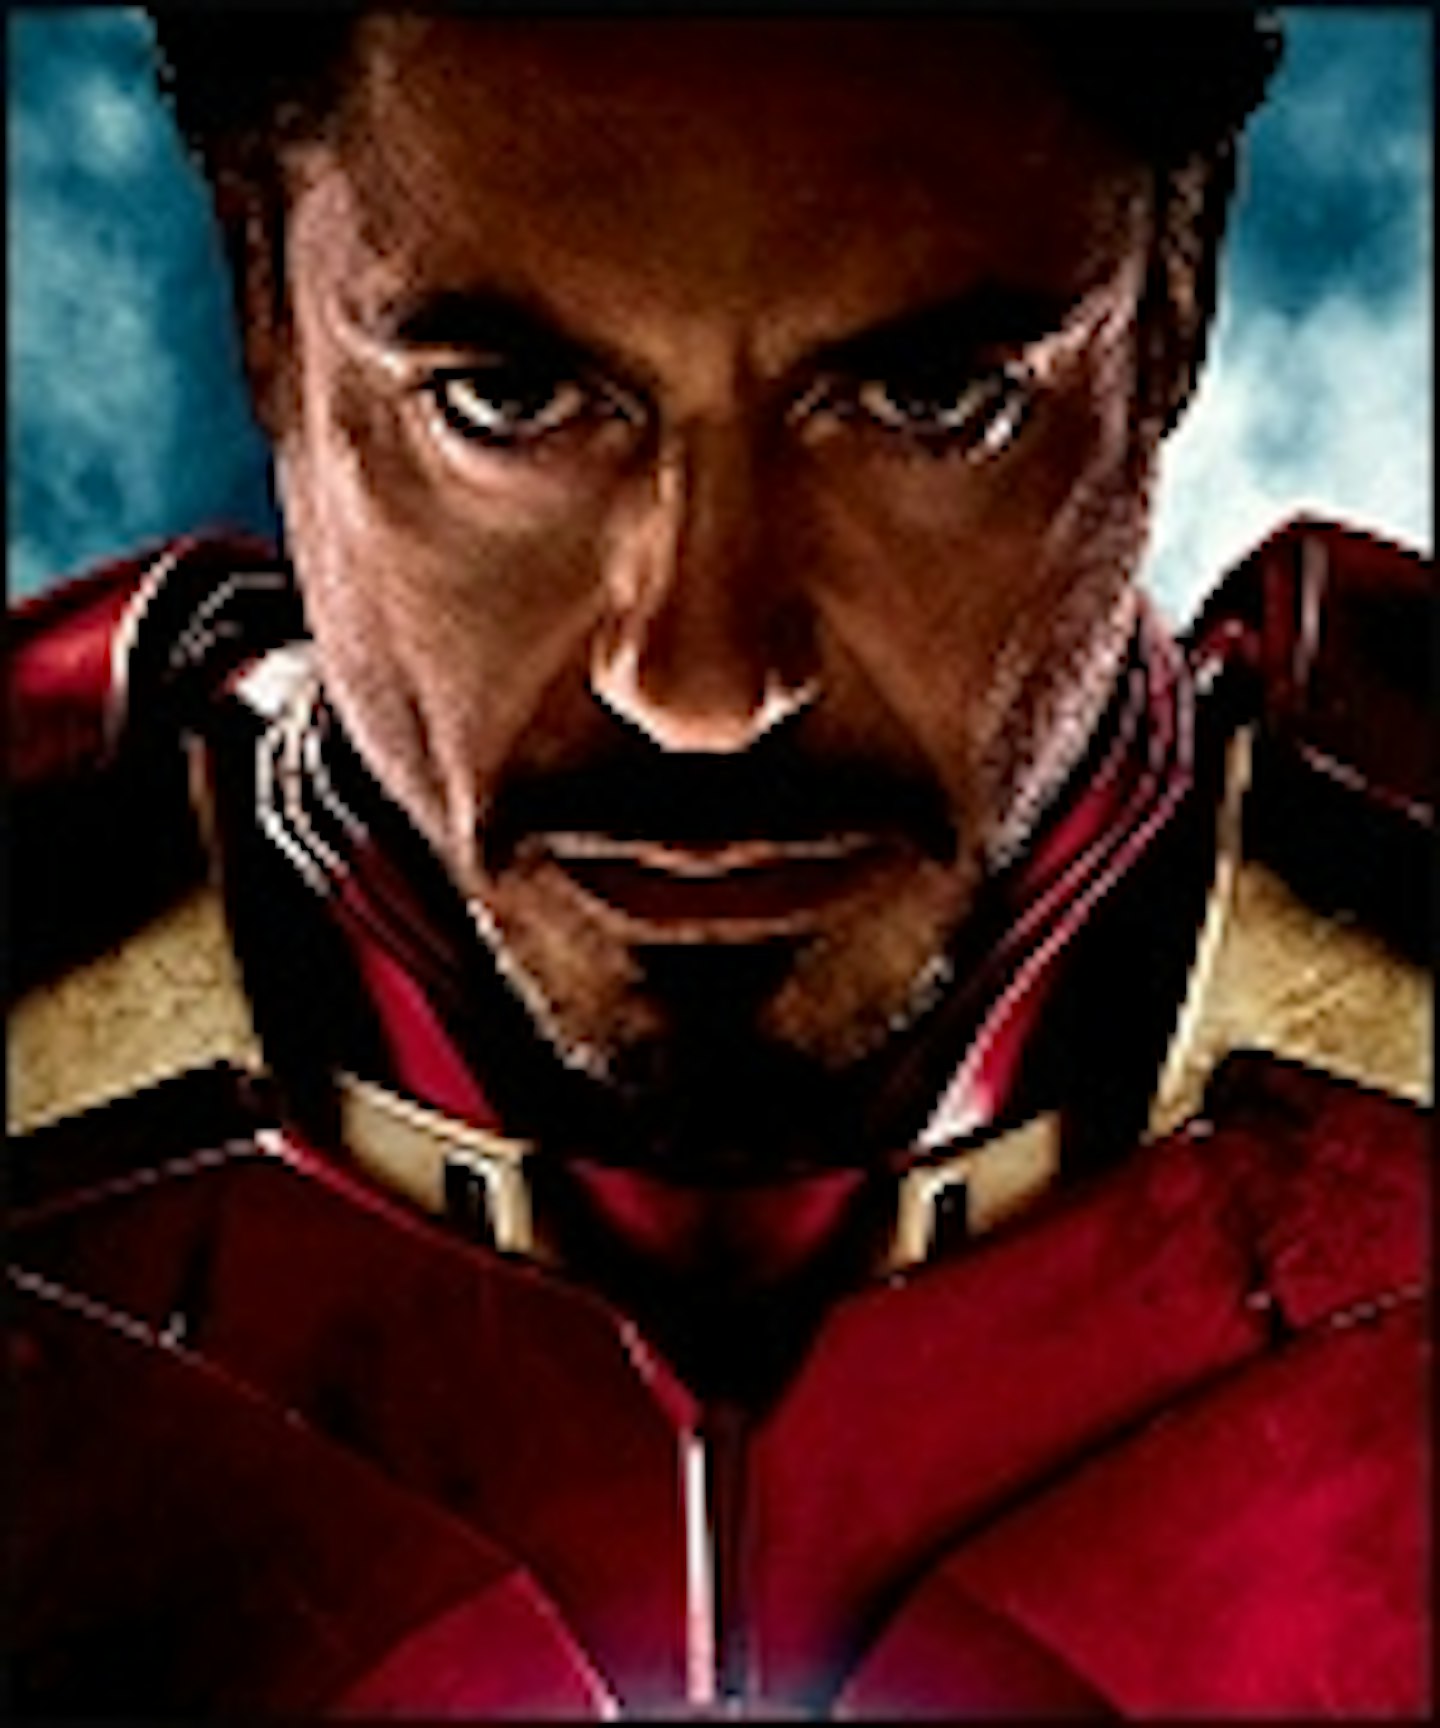 New Iron Man 2 Trailer Lands